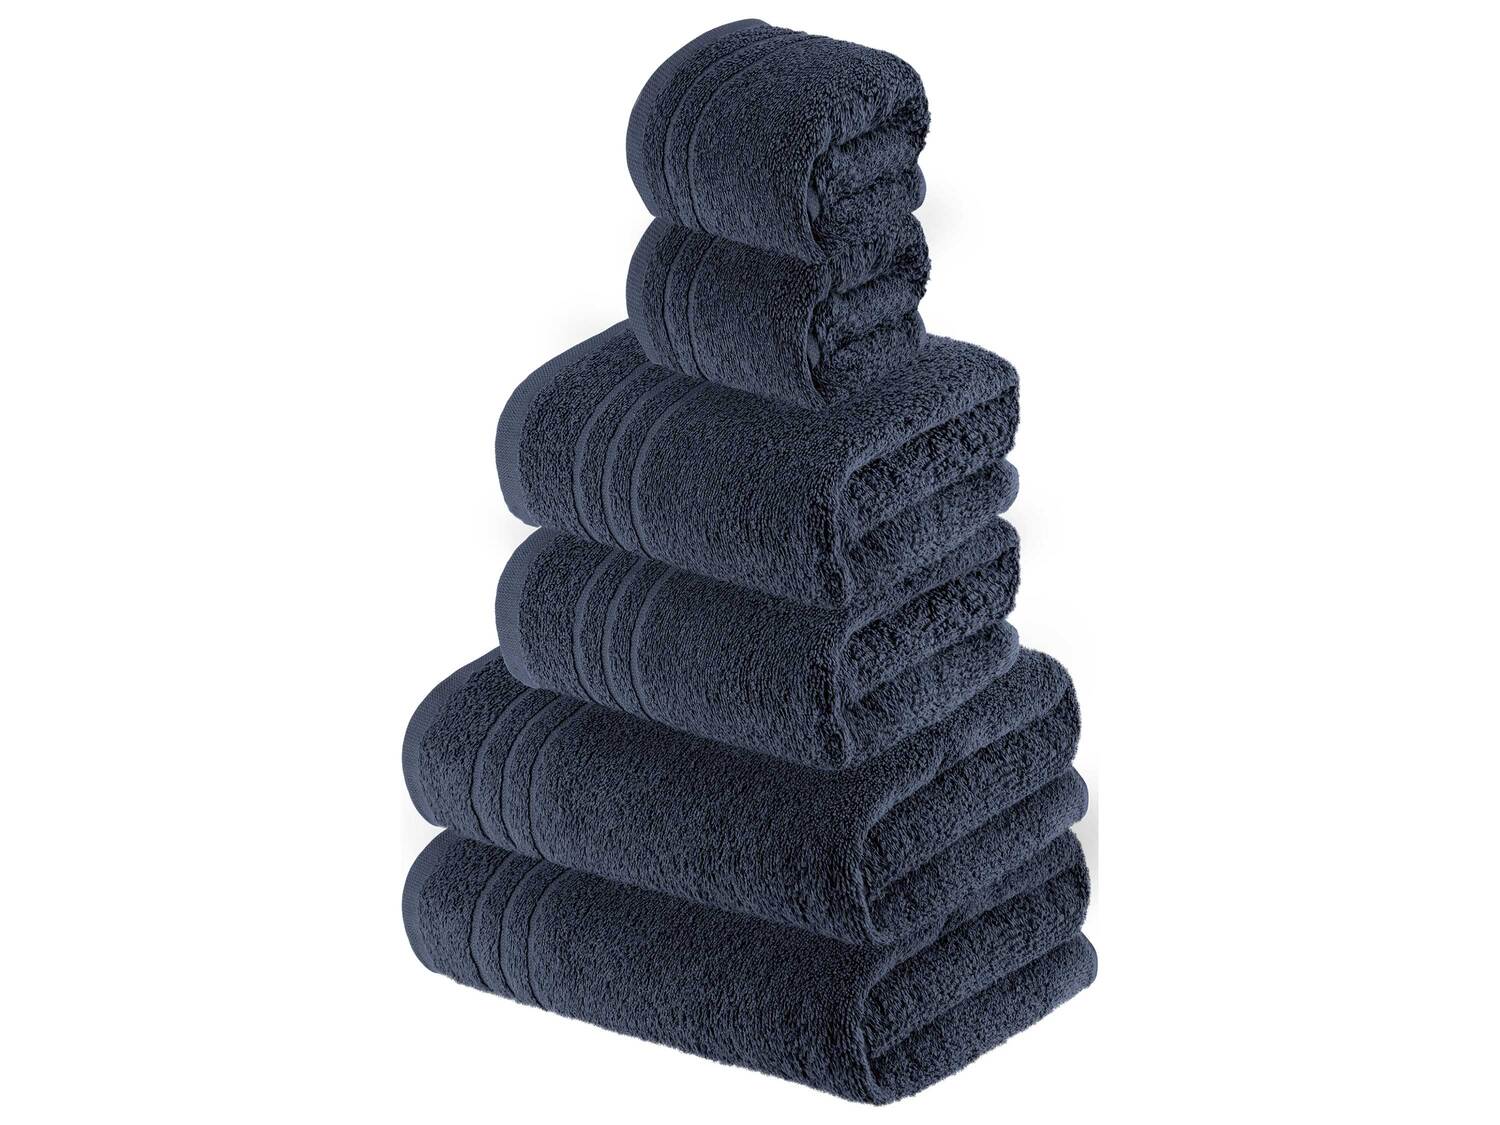 Serviettes de toilette en éponge , le prix 9.99 &#8364; 
- Au choix
- 2 serviettes ...